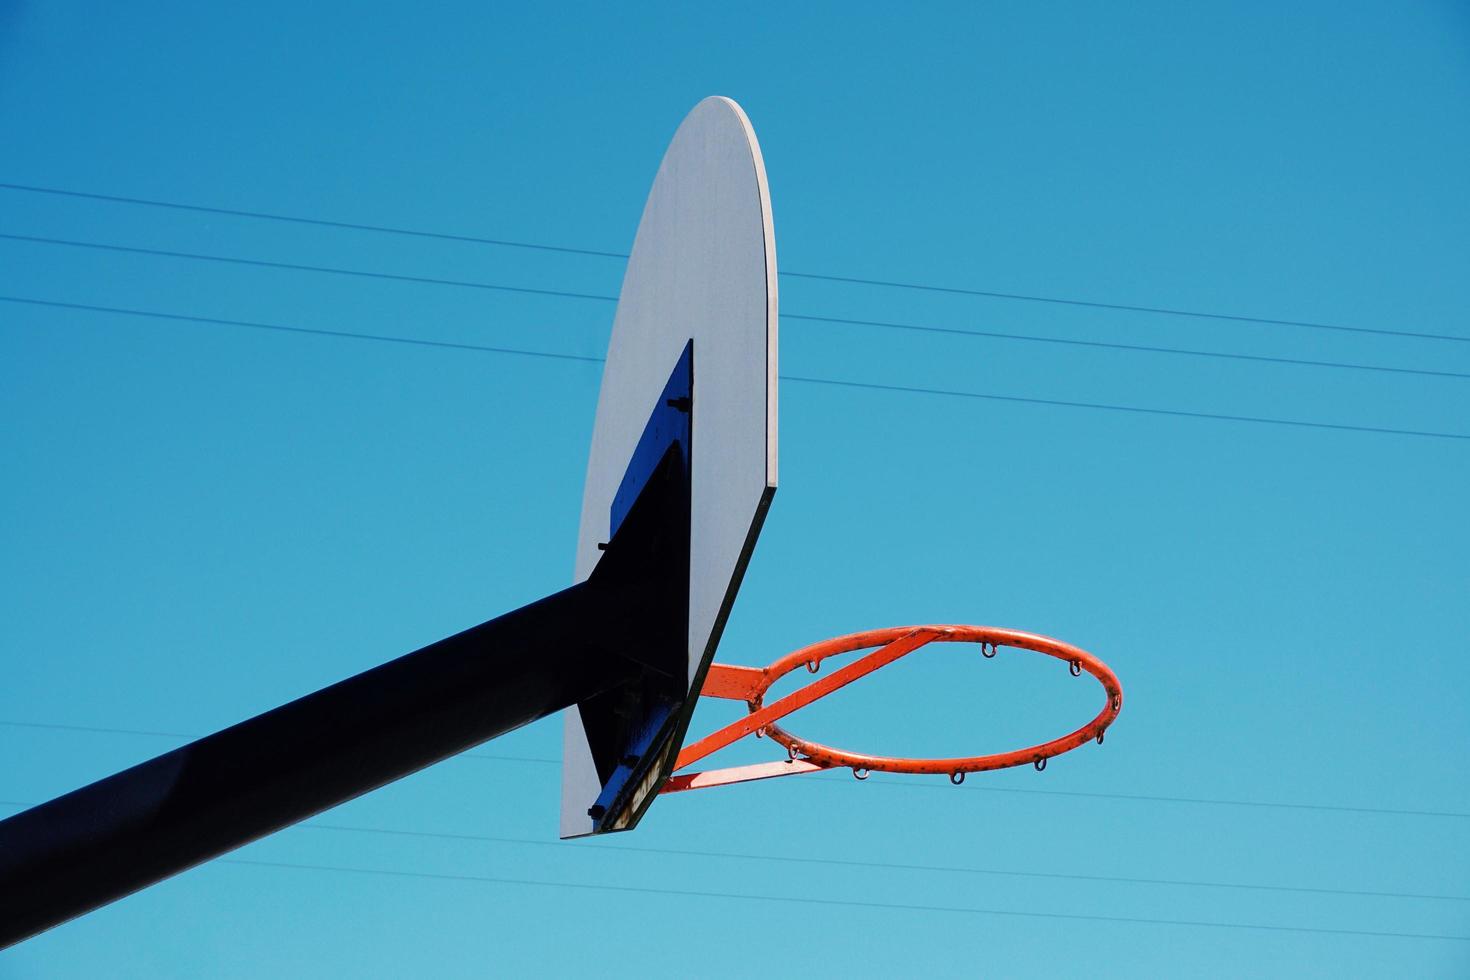 Street basket hoop in the city photo